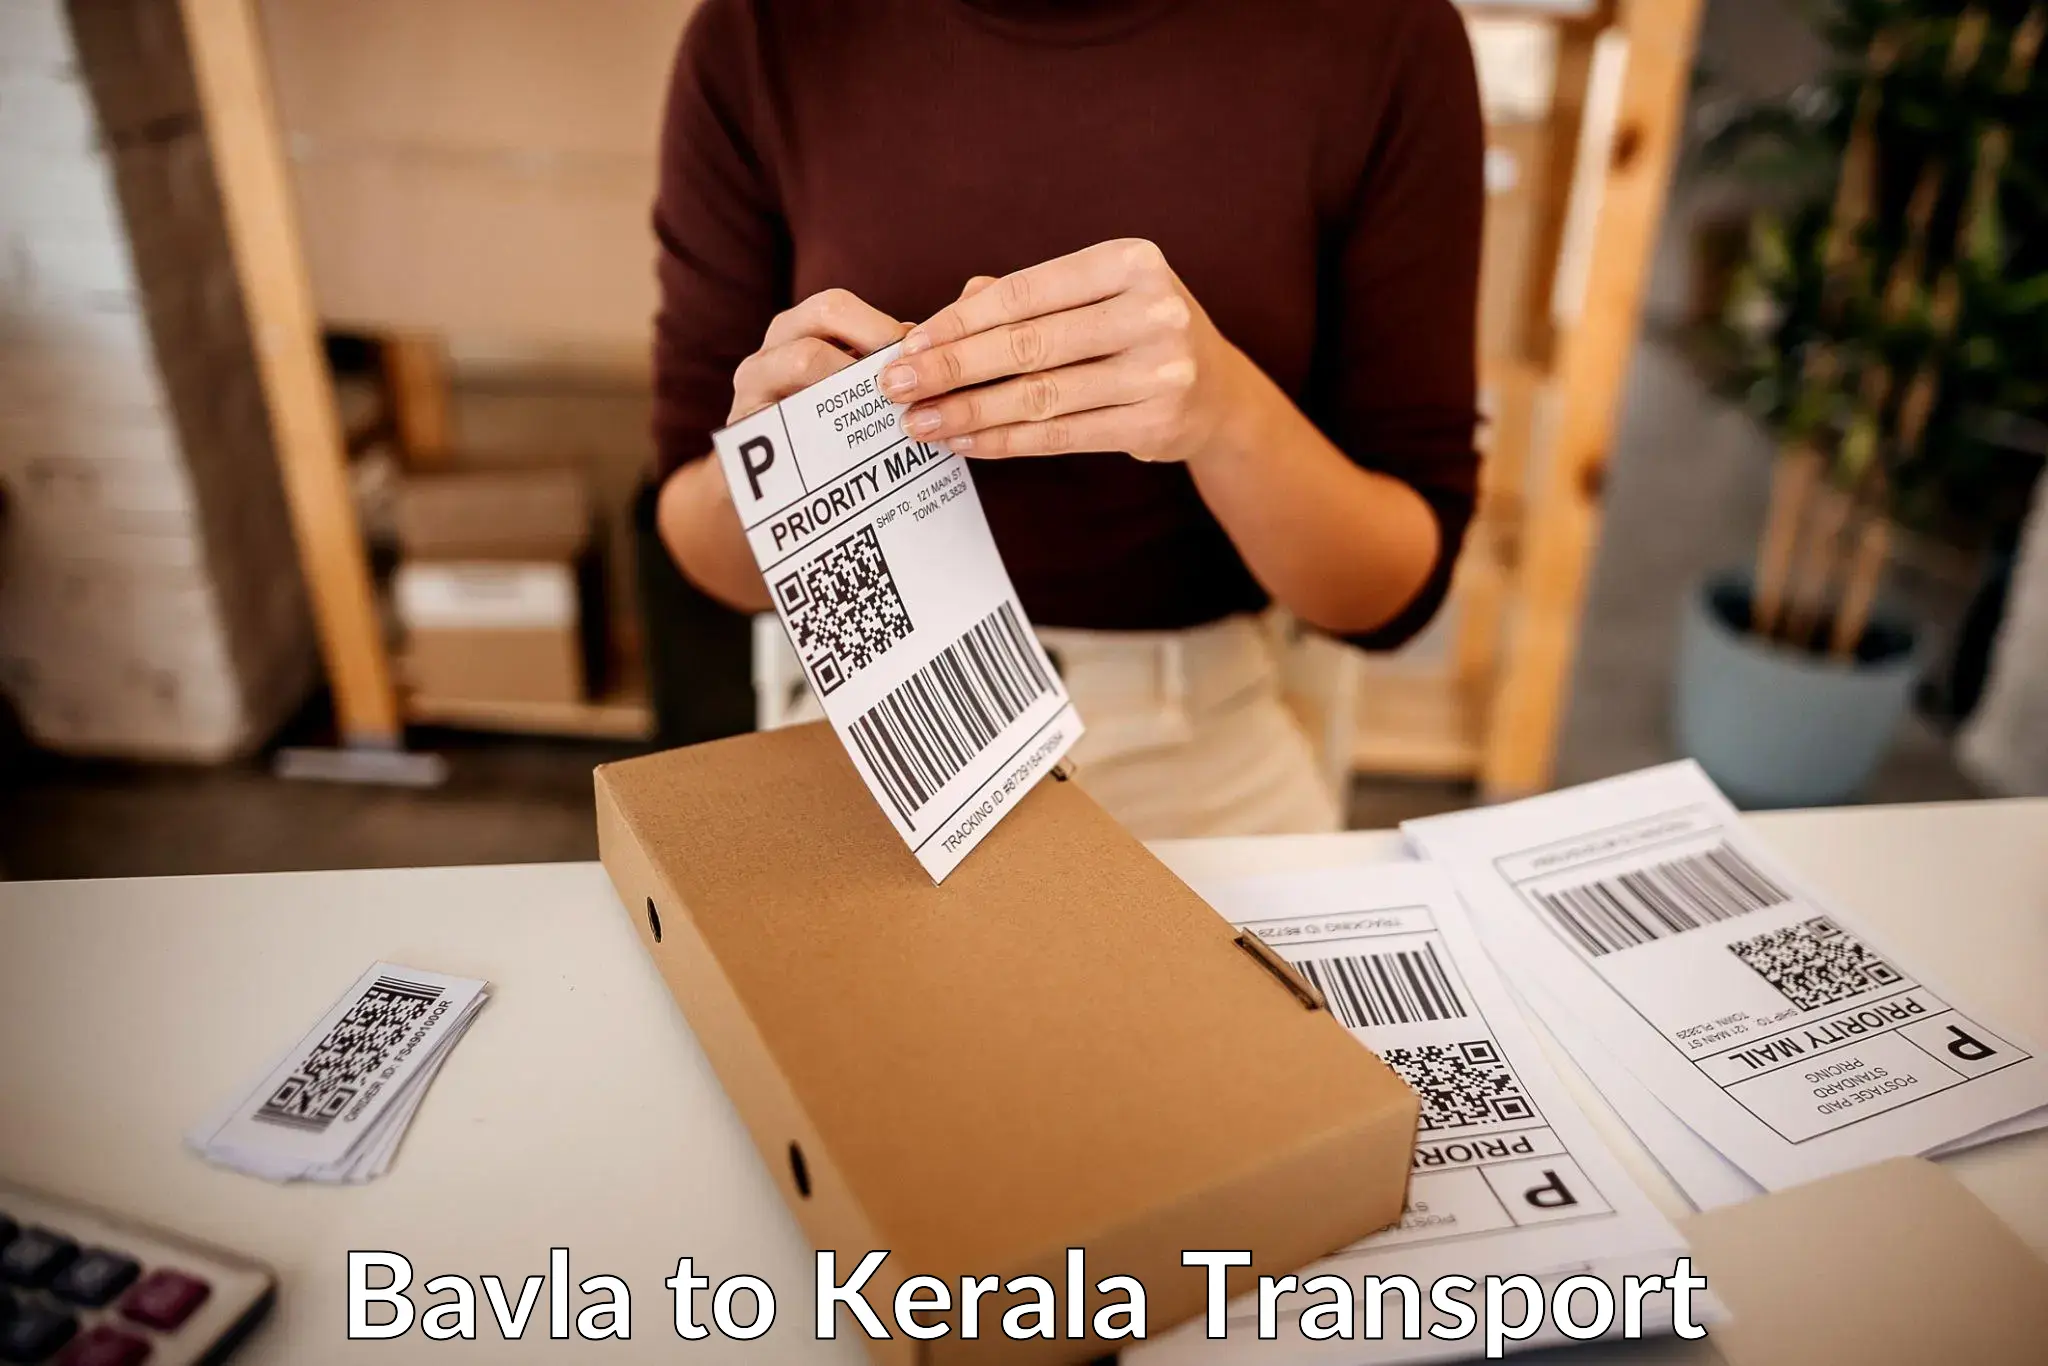 Parcel transport services in Bavla to Shoranur